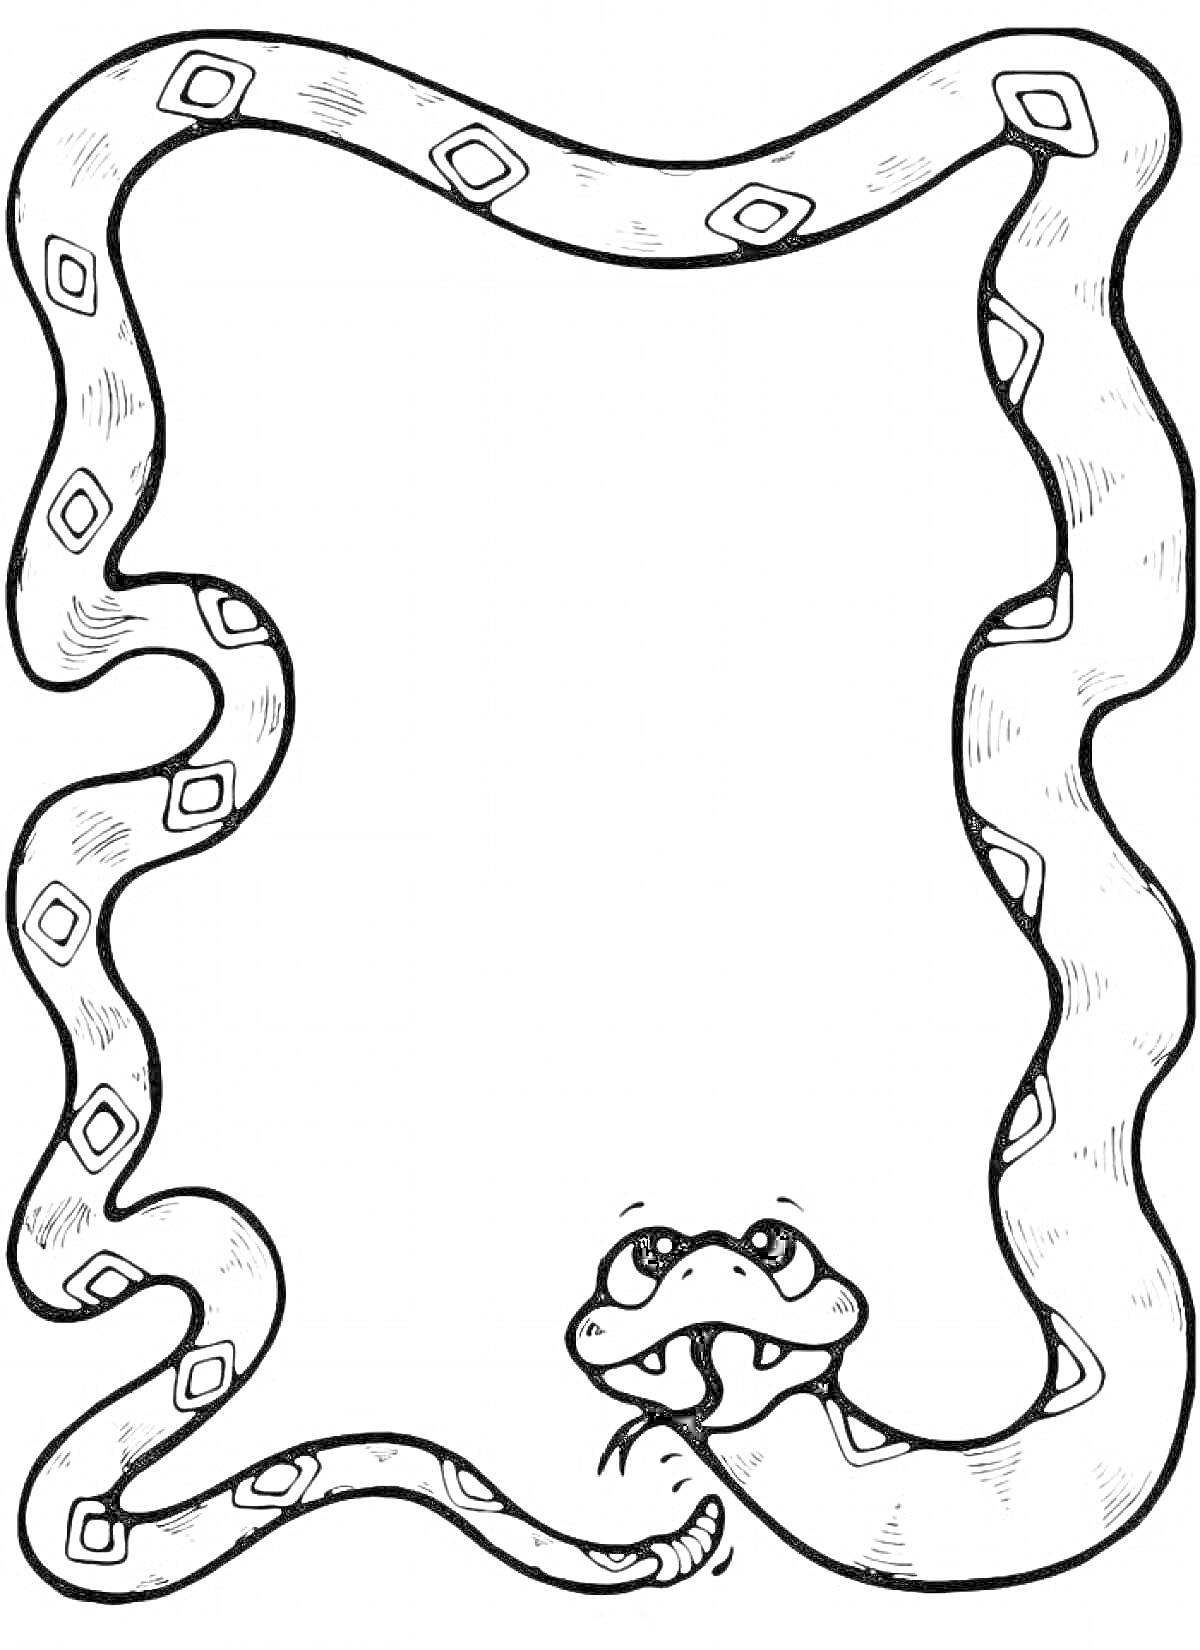 Змея, образующая рамку с ромбовидным узором и забавной мордочкой